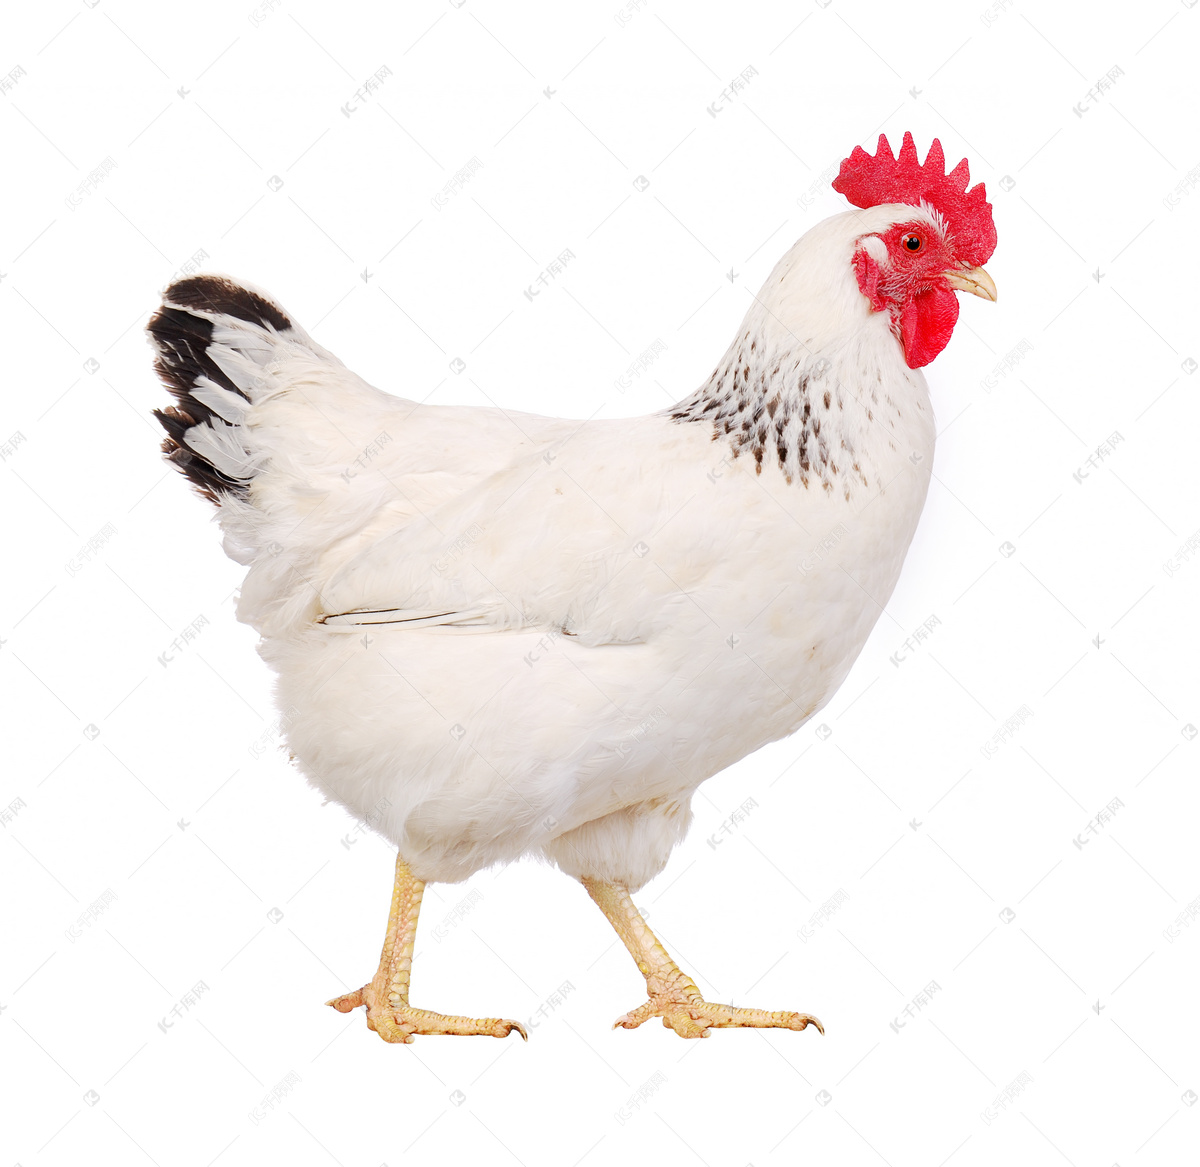 超过 100 张关于“肖像母鸡”和“母鸡”的免费图片 - Pixabay